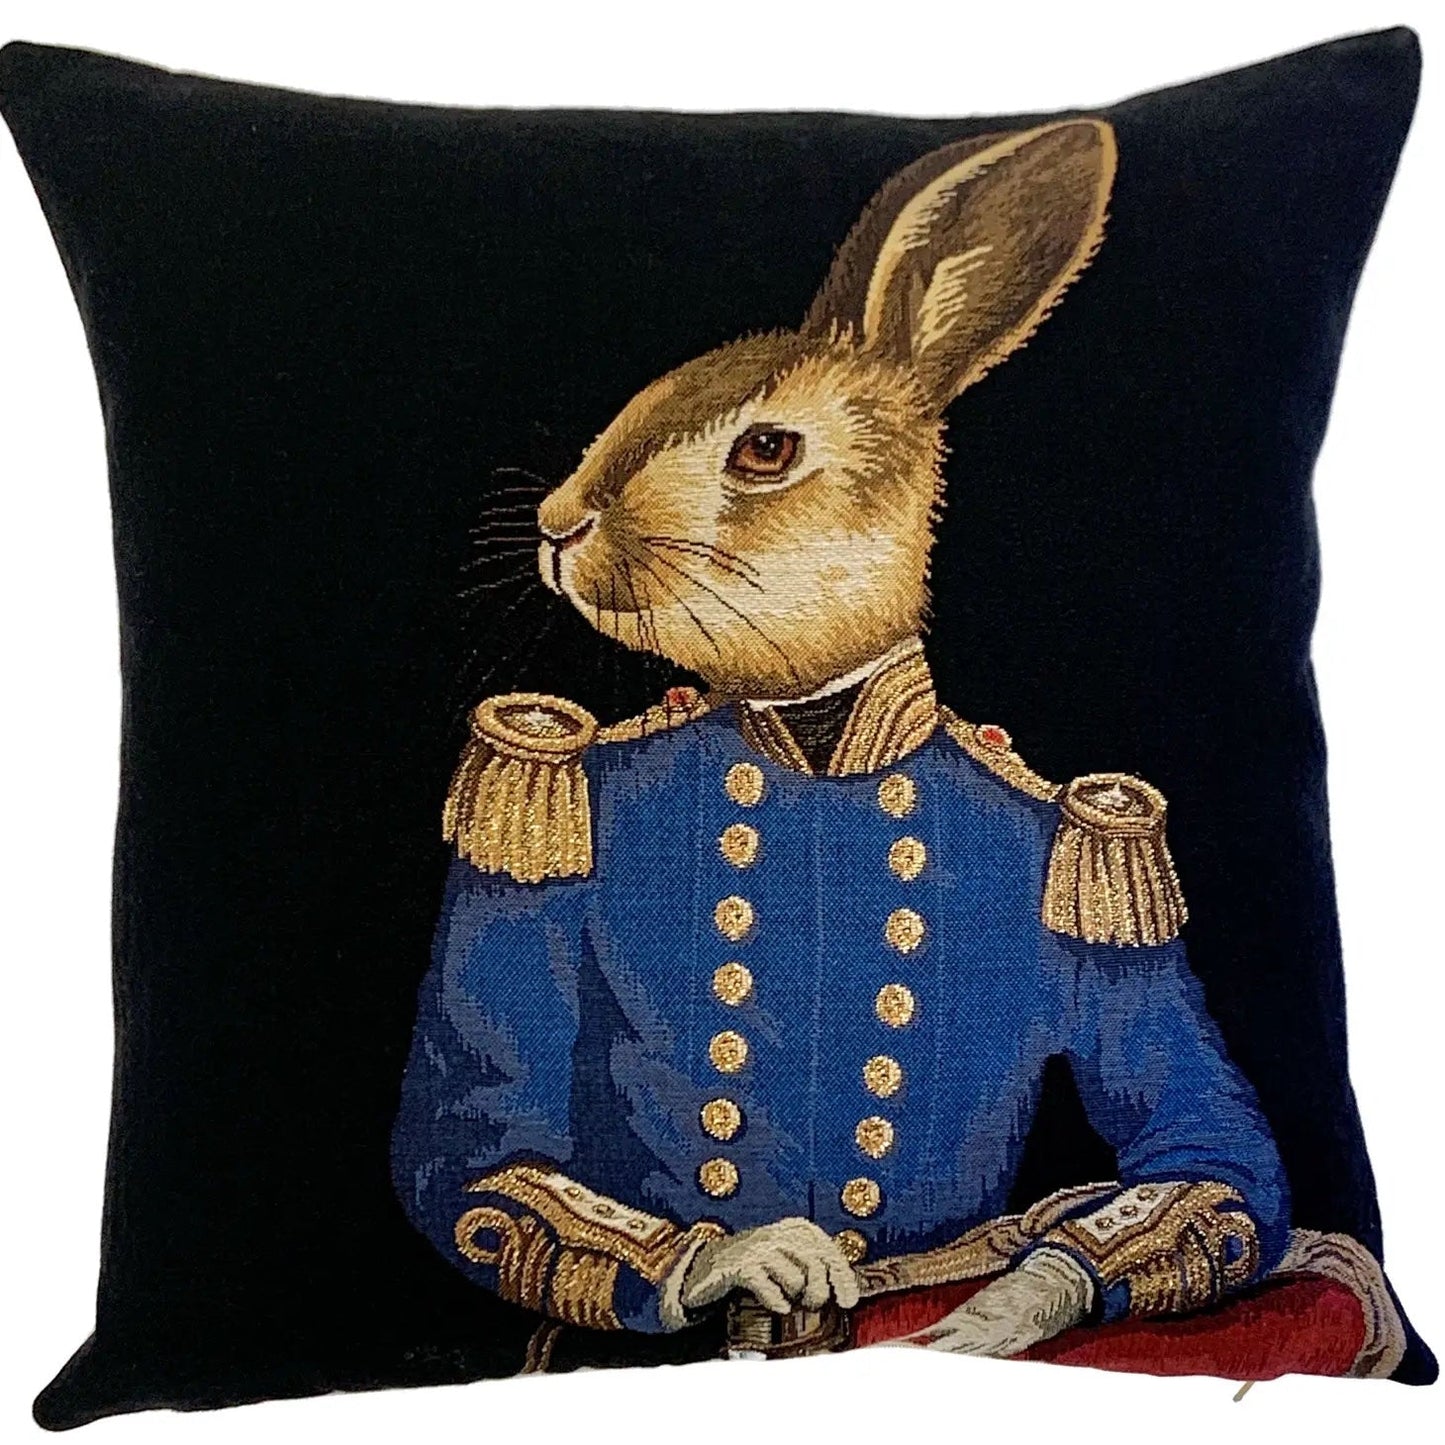 Pillow: Decorative General Rabbit Throw Pillow